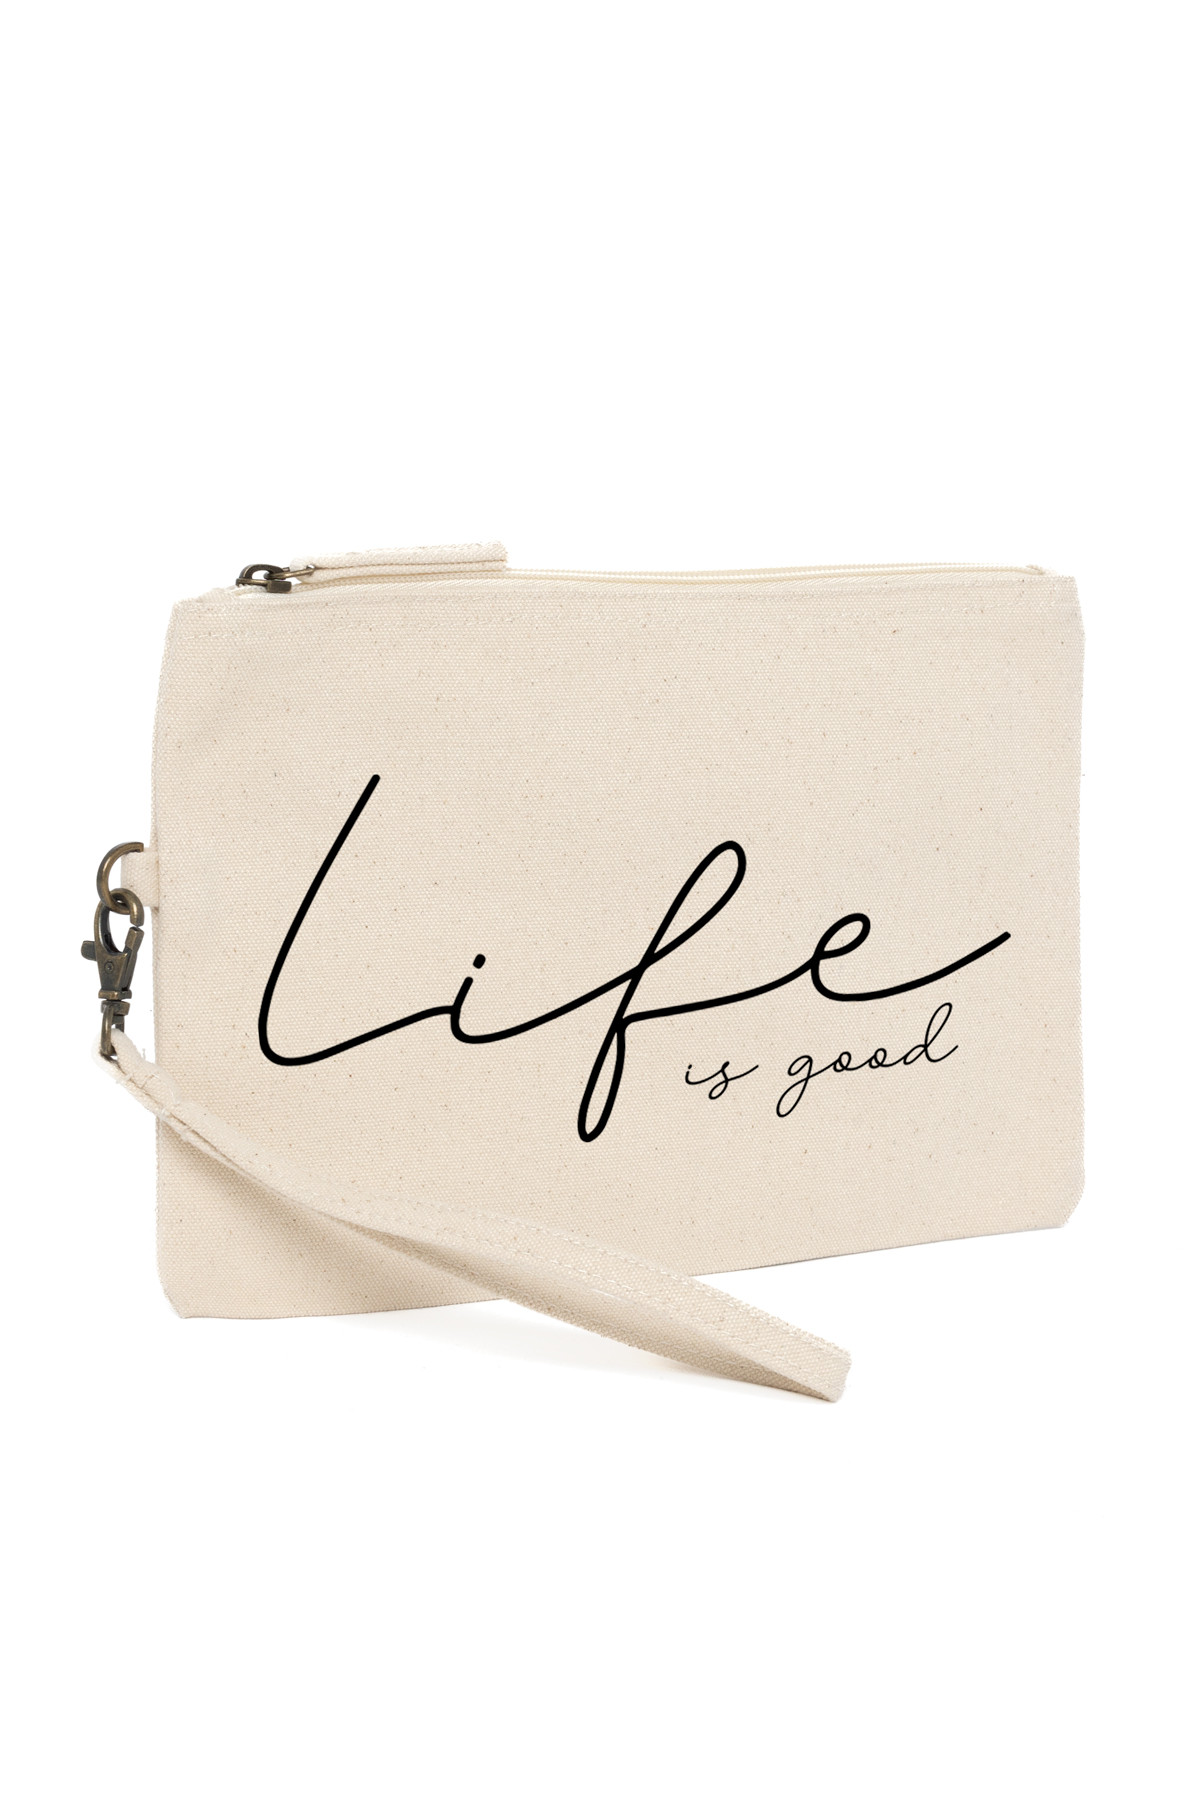 Sea Bags | Life is Good Wag On Wristlet